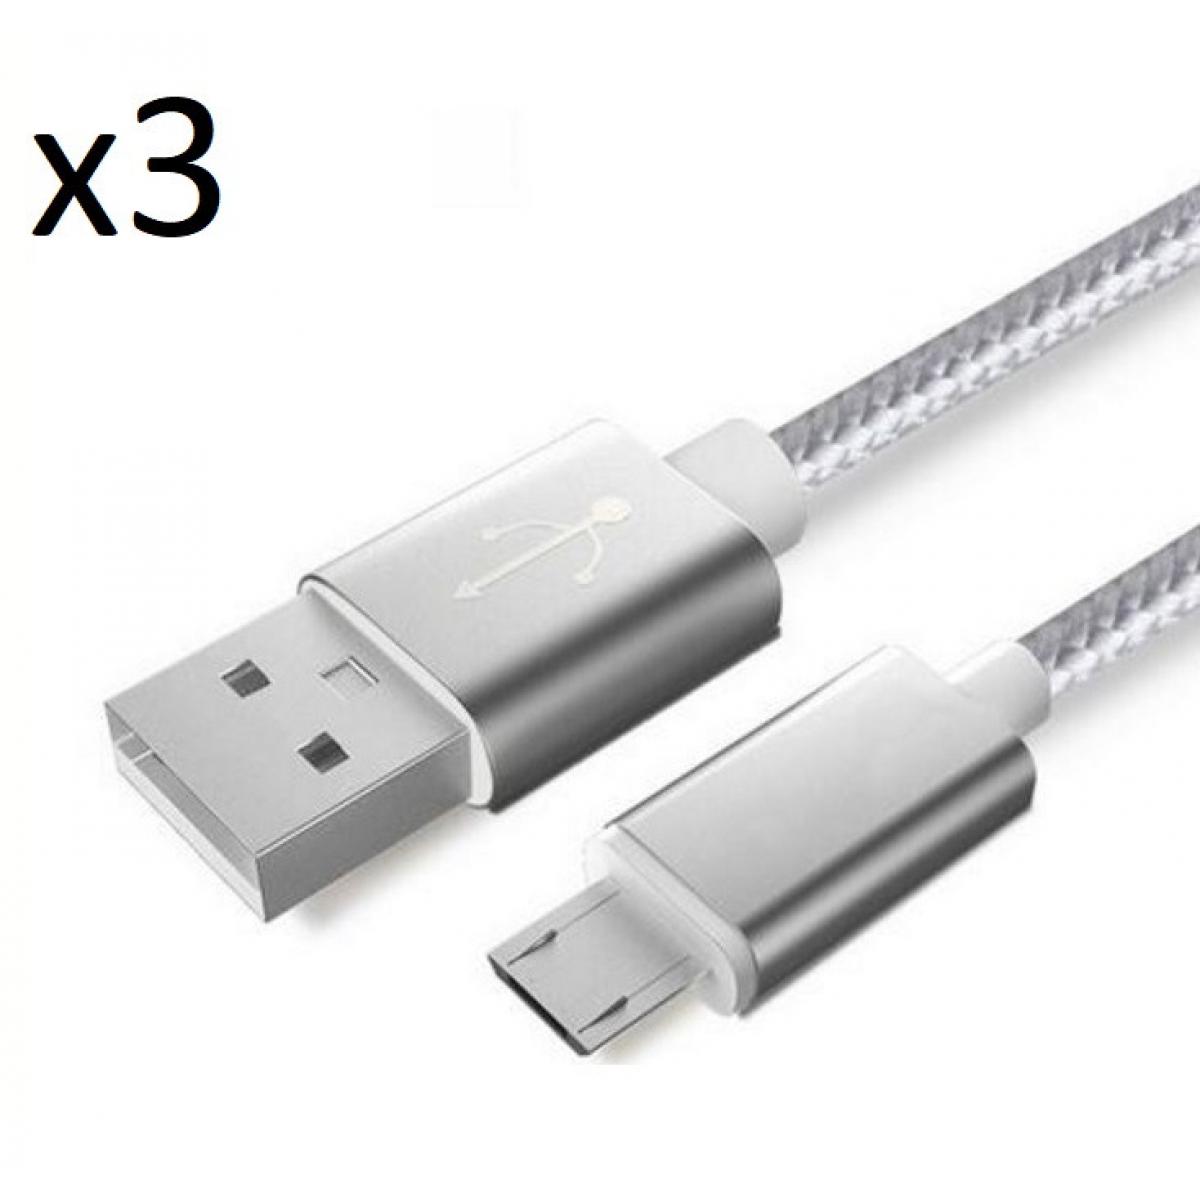 Shot - Pack de 3 Cables Metal Nylon Micro USB pour Ultimate Ears MEGABLAST Smartphone Android Chargeur (ARGENT) - Chargeur secteur téléphone